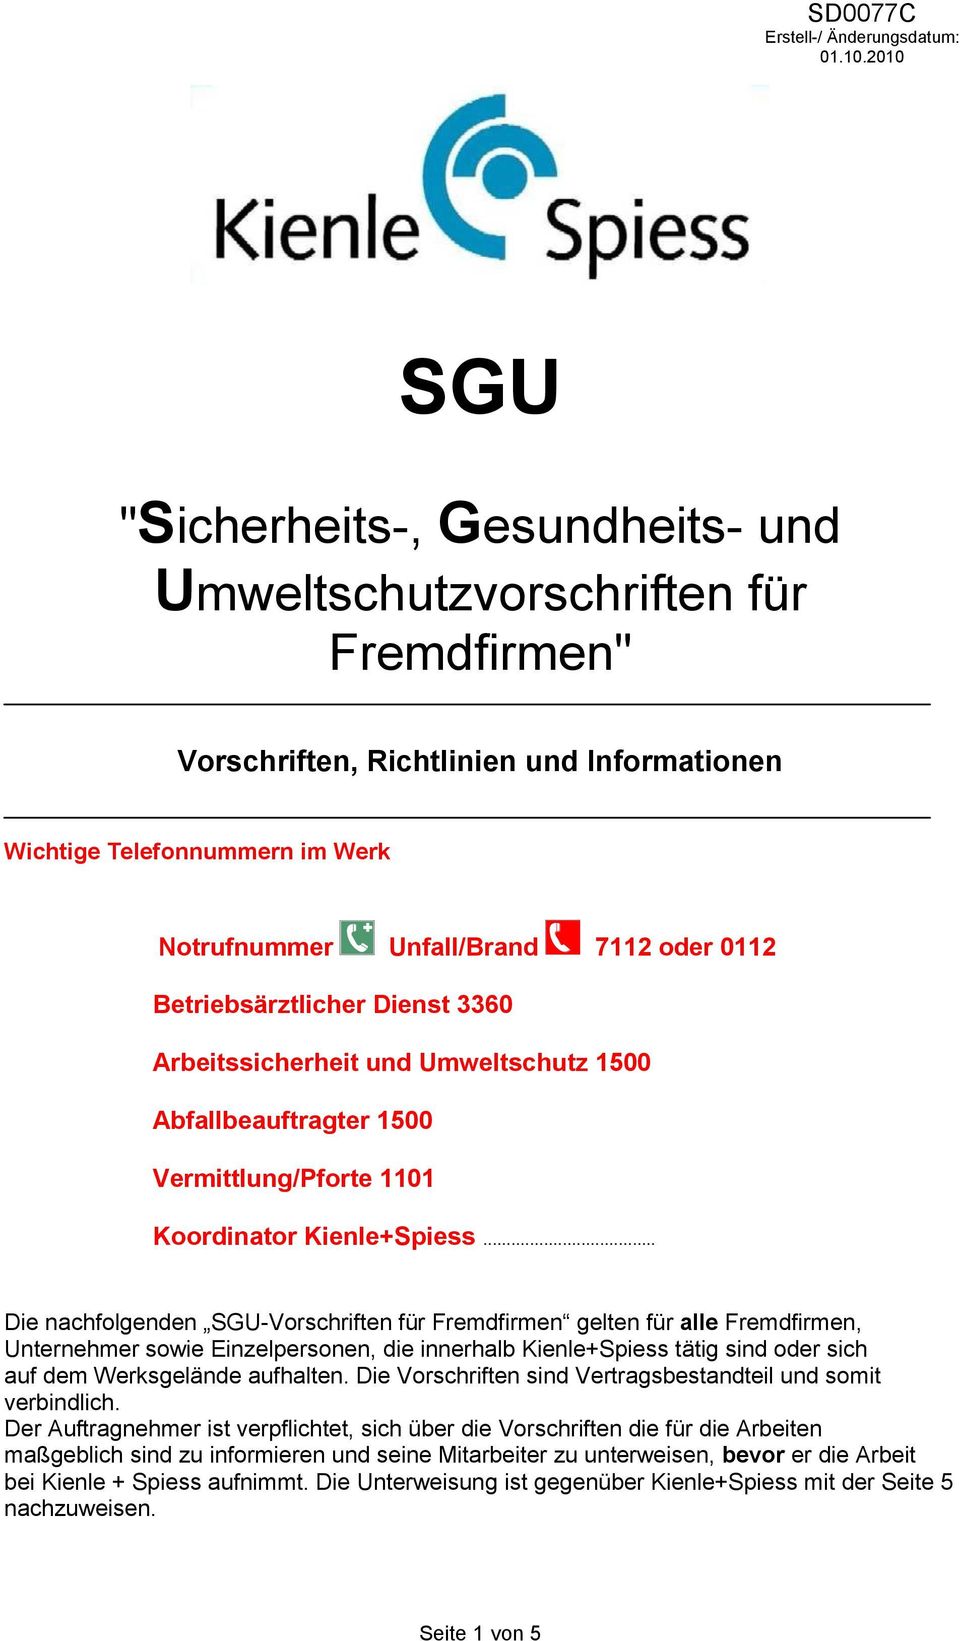 .. Die nachfolgenden SGU-Vorschriften für Fremdfirmen gelten für alle Fremdfirmen, Unternehmer sowie Einzelpersonen, die innerhalb Kienle+Spiess tätig sind oder sich auf dem Werksgelände aufhalten.